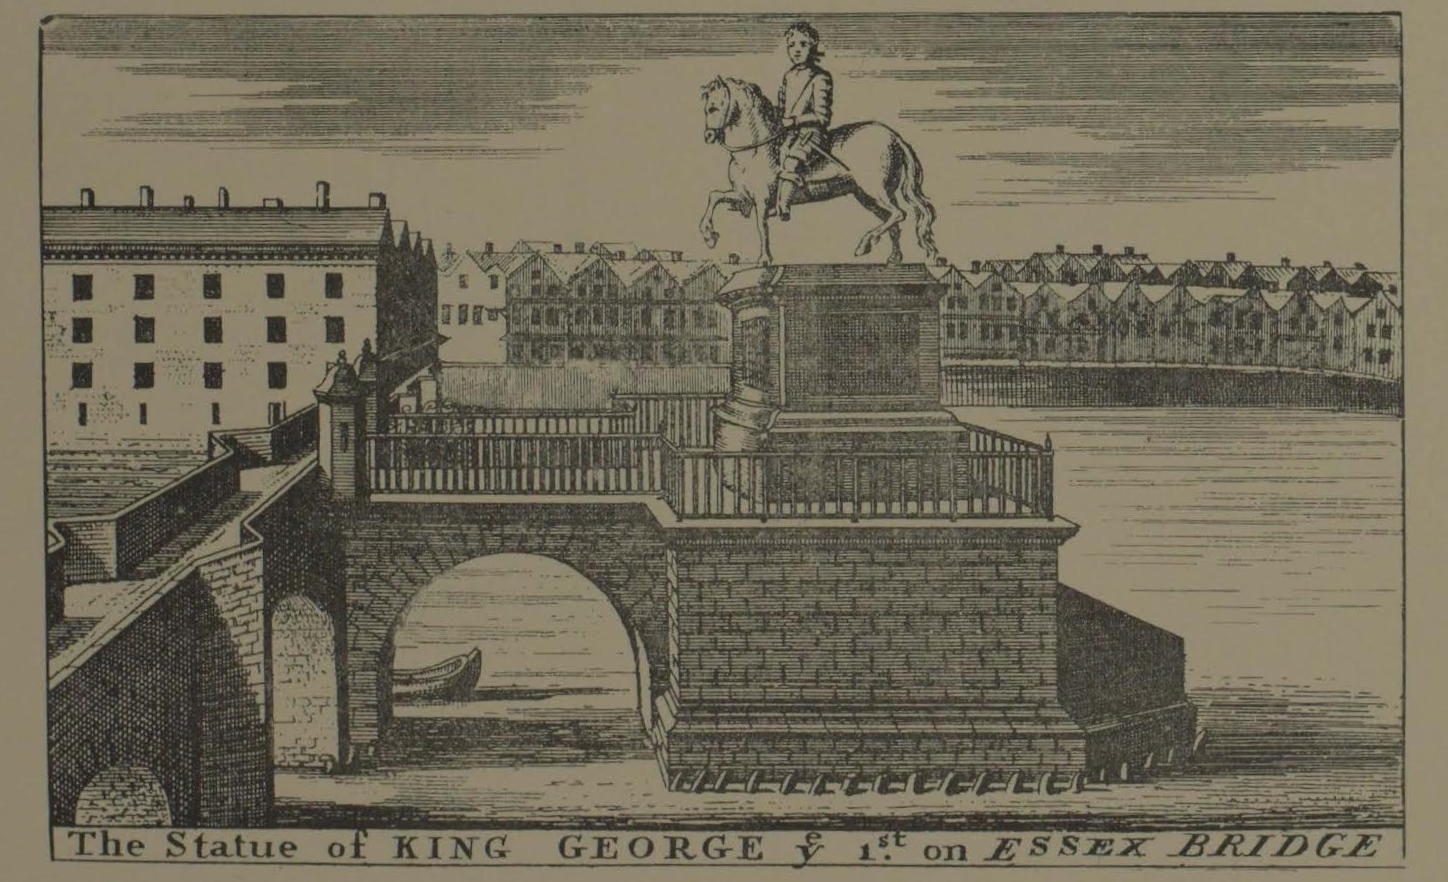 the statue of King George on Essex Bridge